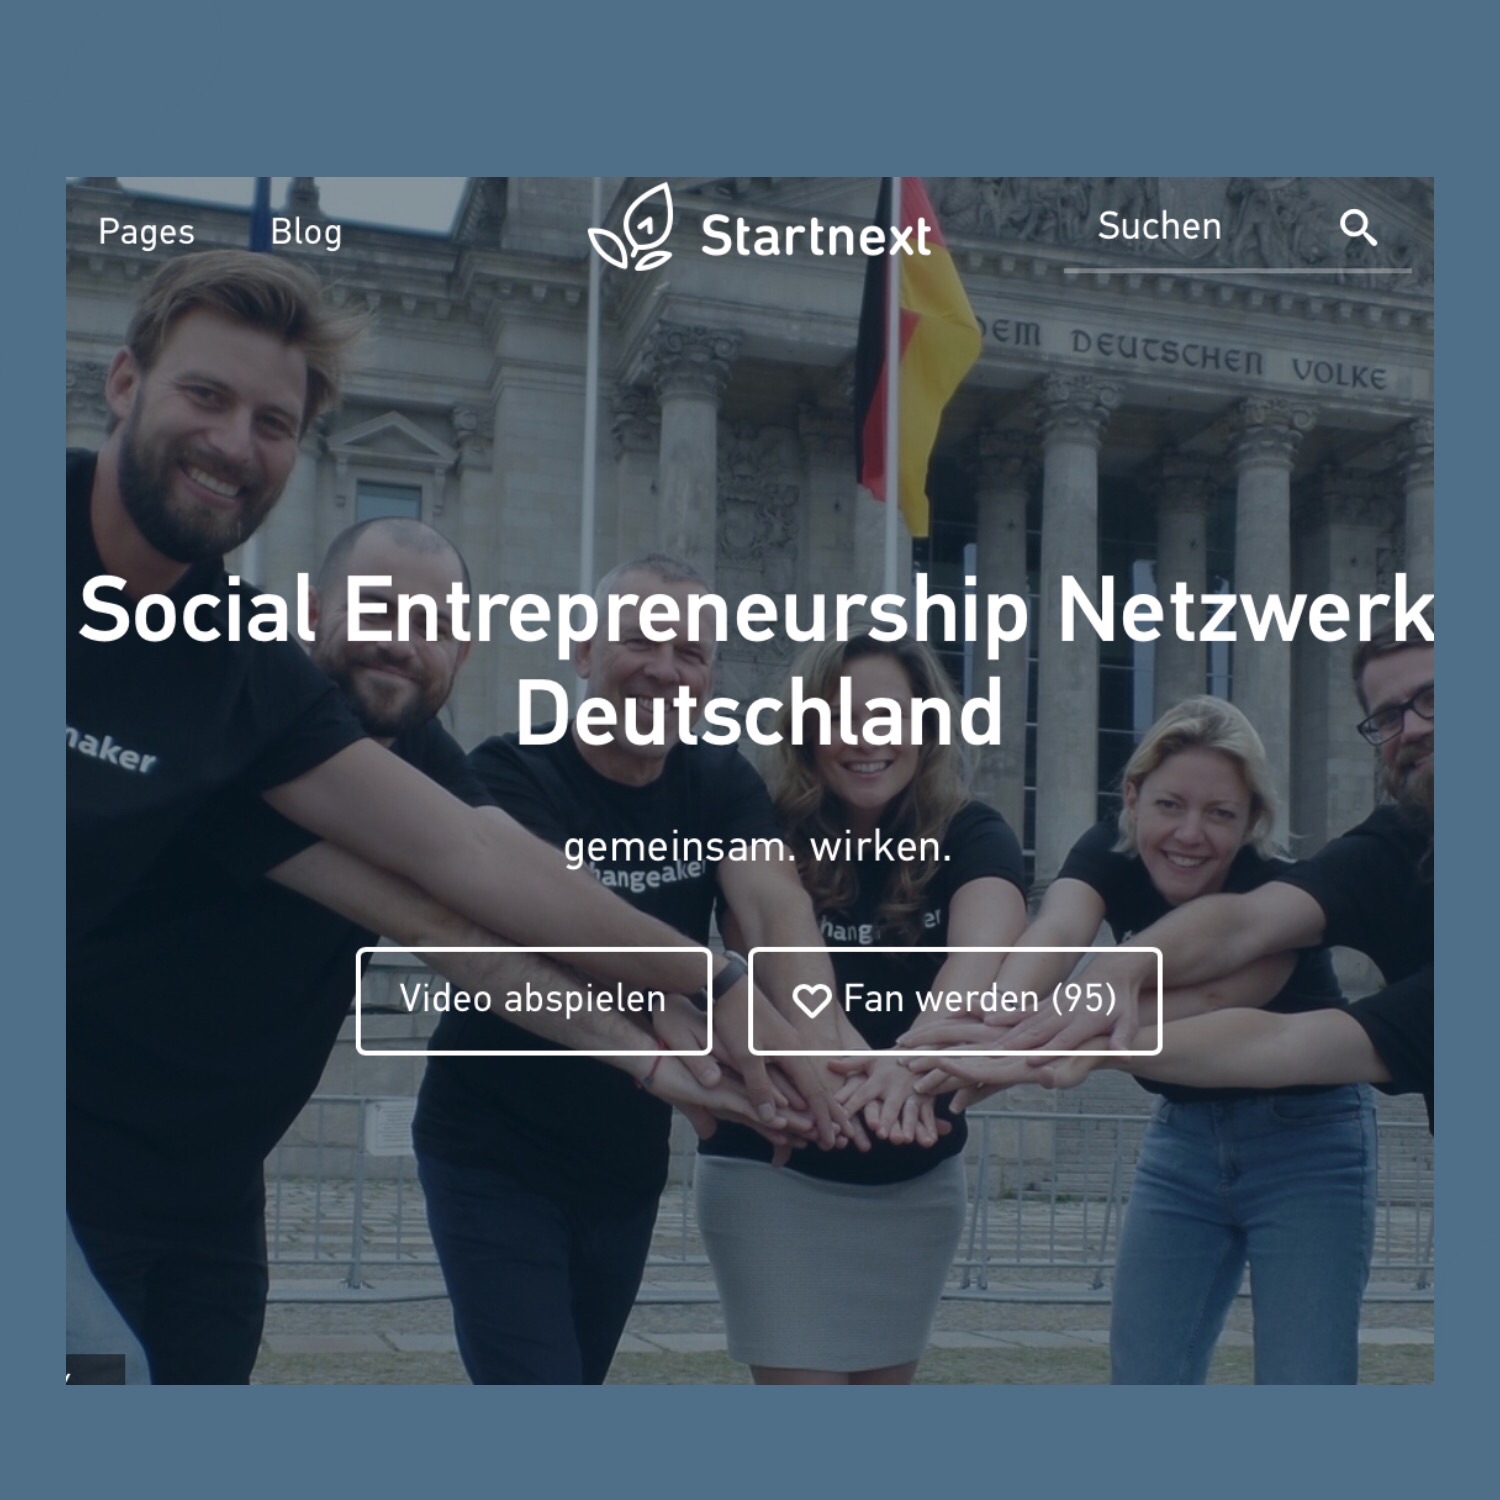 Social Entrepreneurship Netzwerk Deutschland: Ein Crowdfunding Projekt mit Sinn und Mission